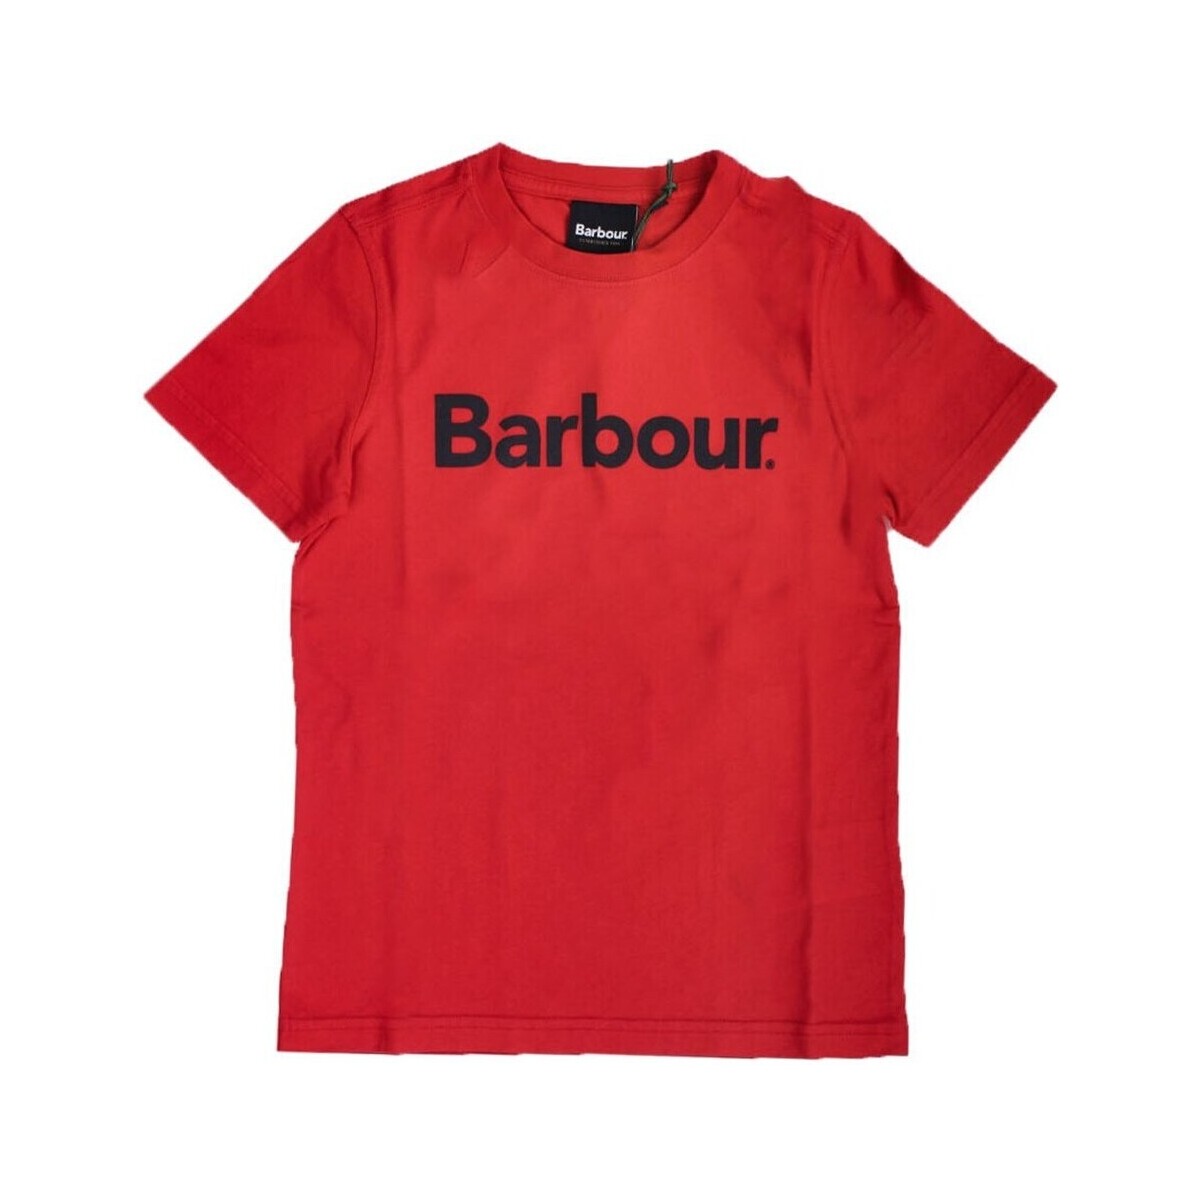 Textiel Jongens T-shirts korte mouwen Barbour CTS0060 Rood